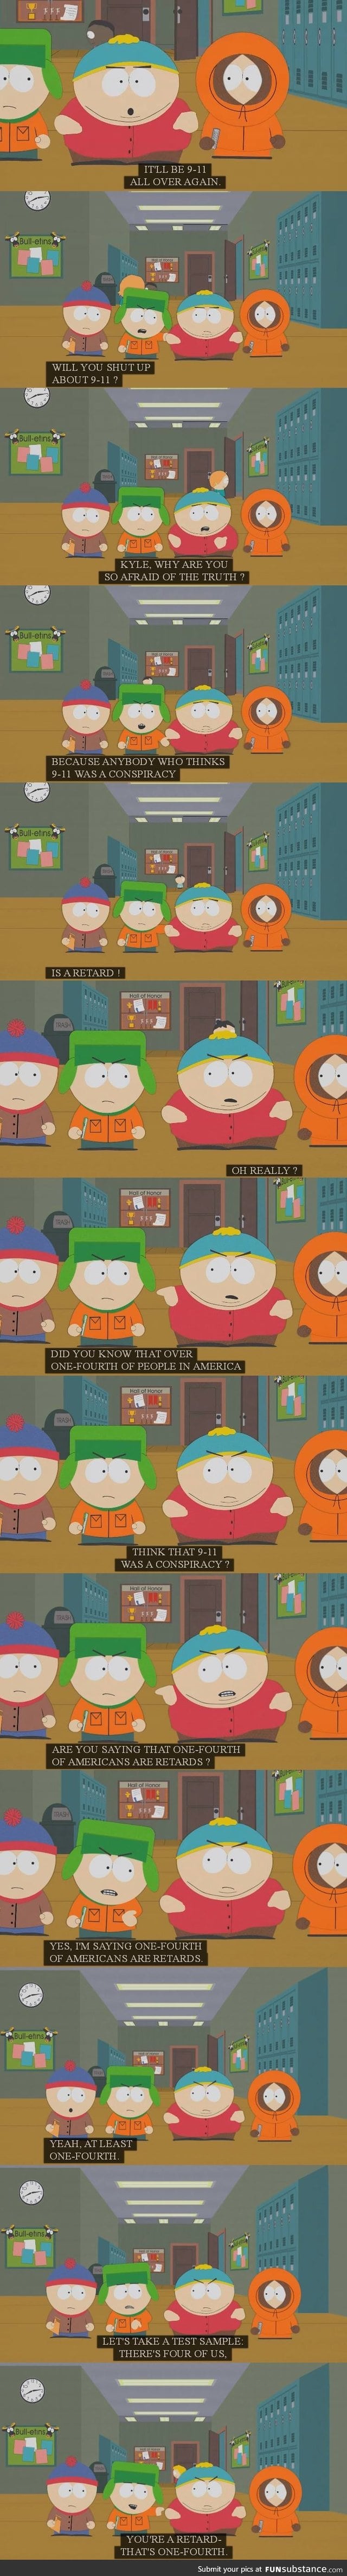 Who else but South Park